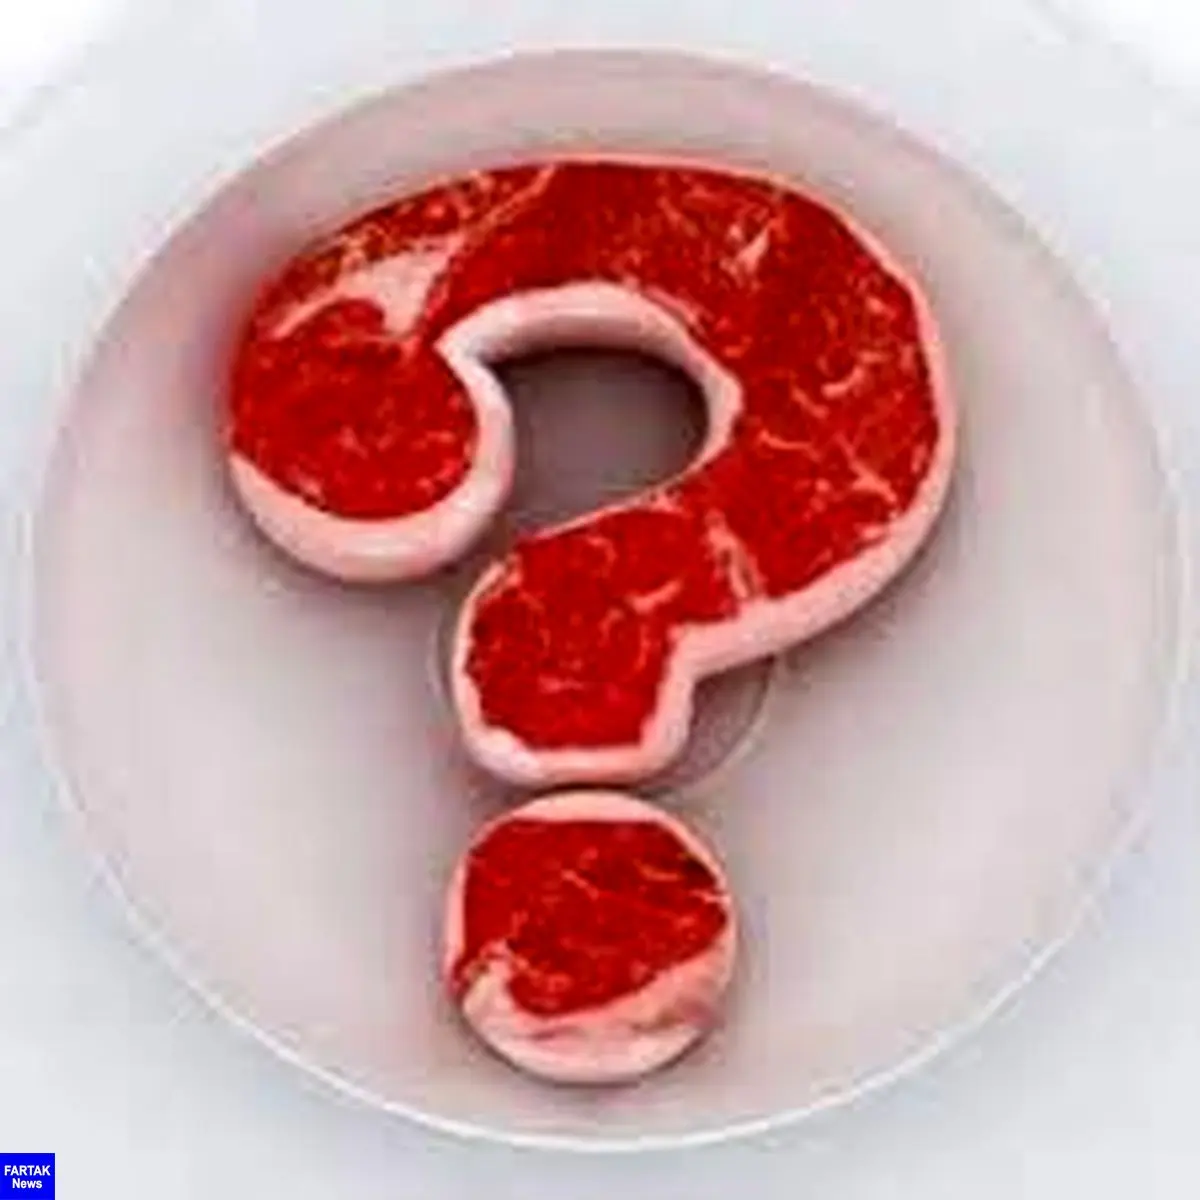 حذف گوشت قرمز از برنامه غذایی خوب است یا بد؟